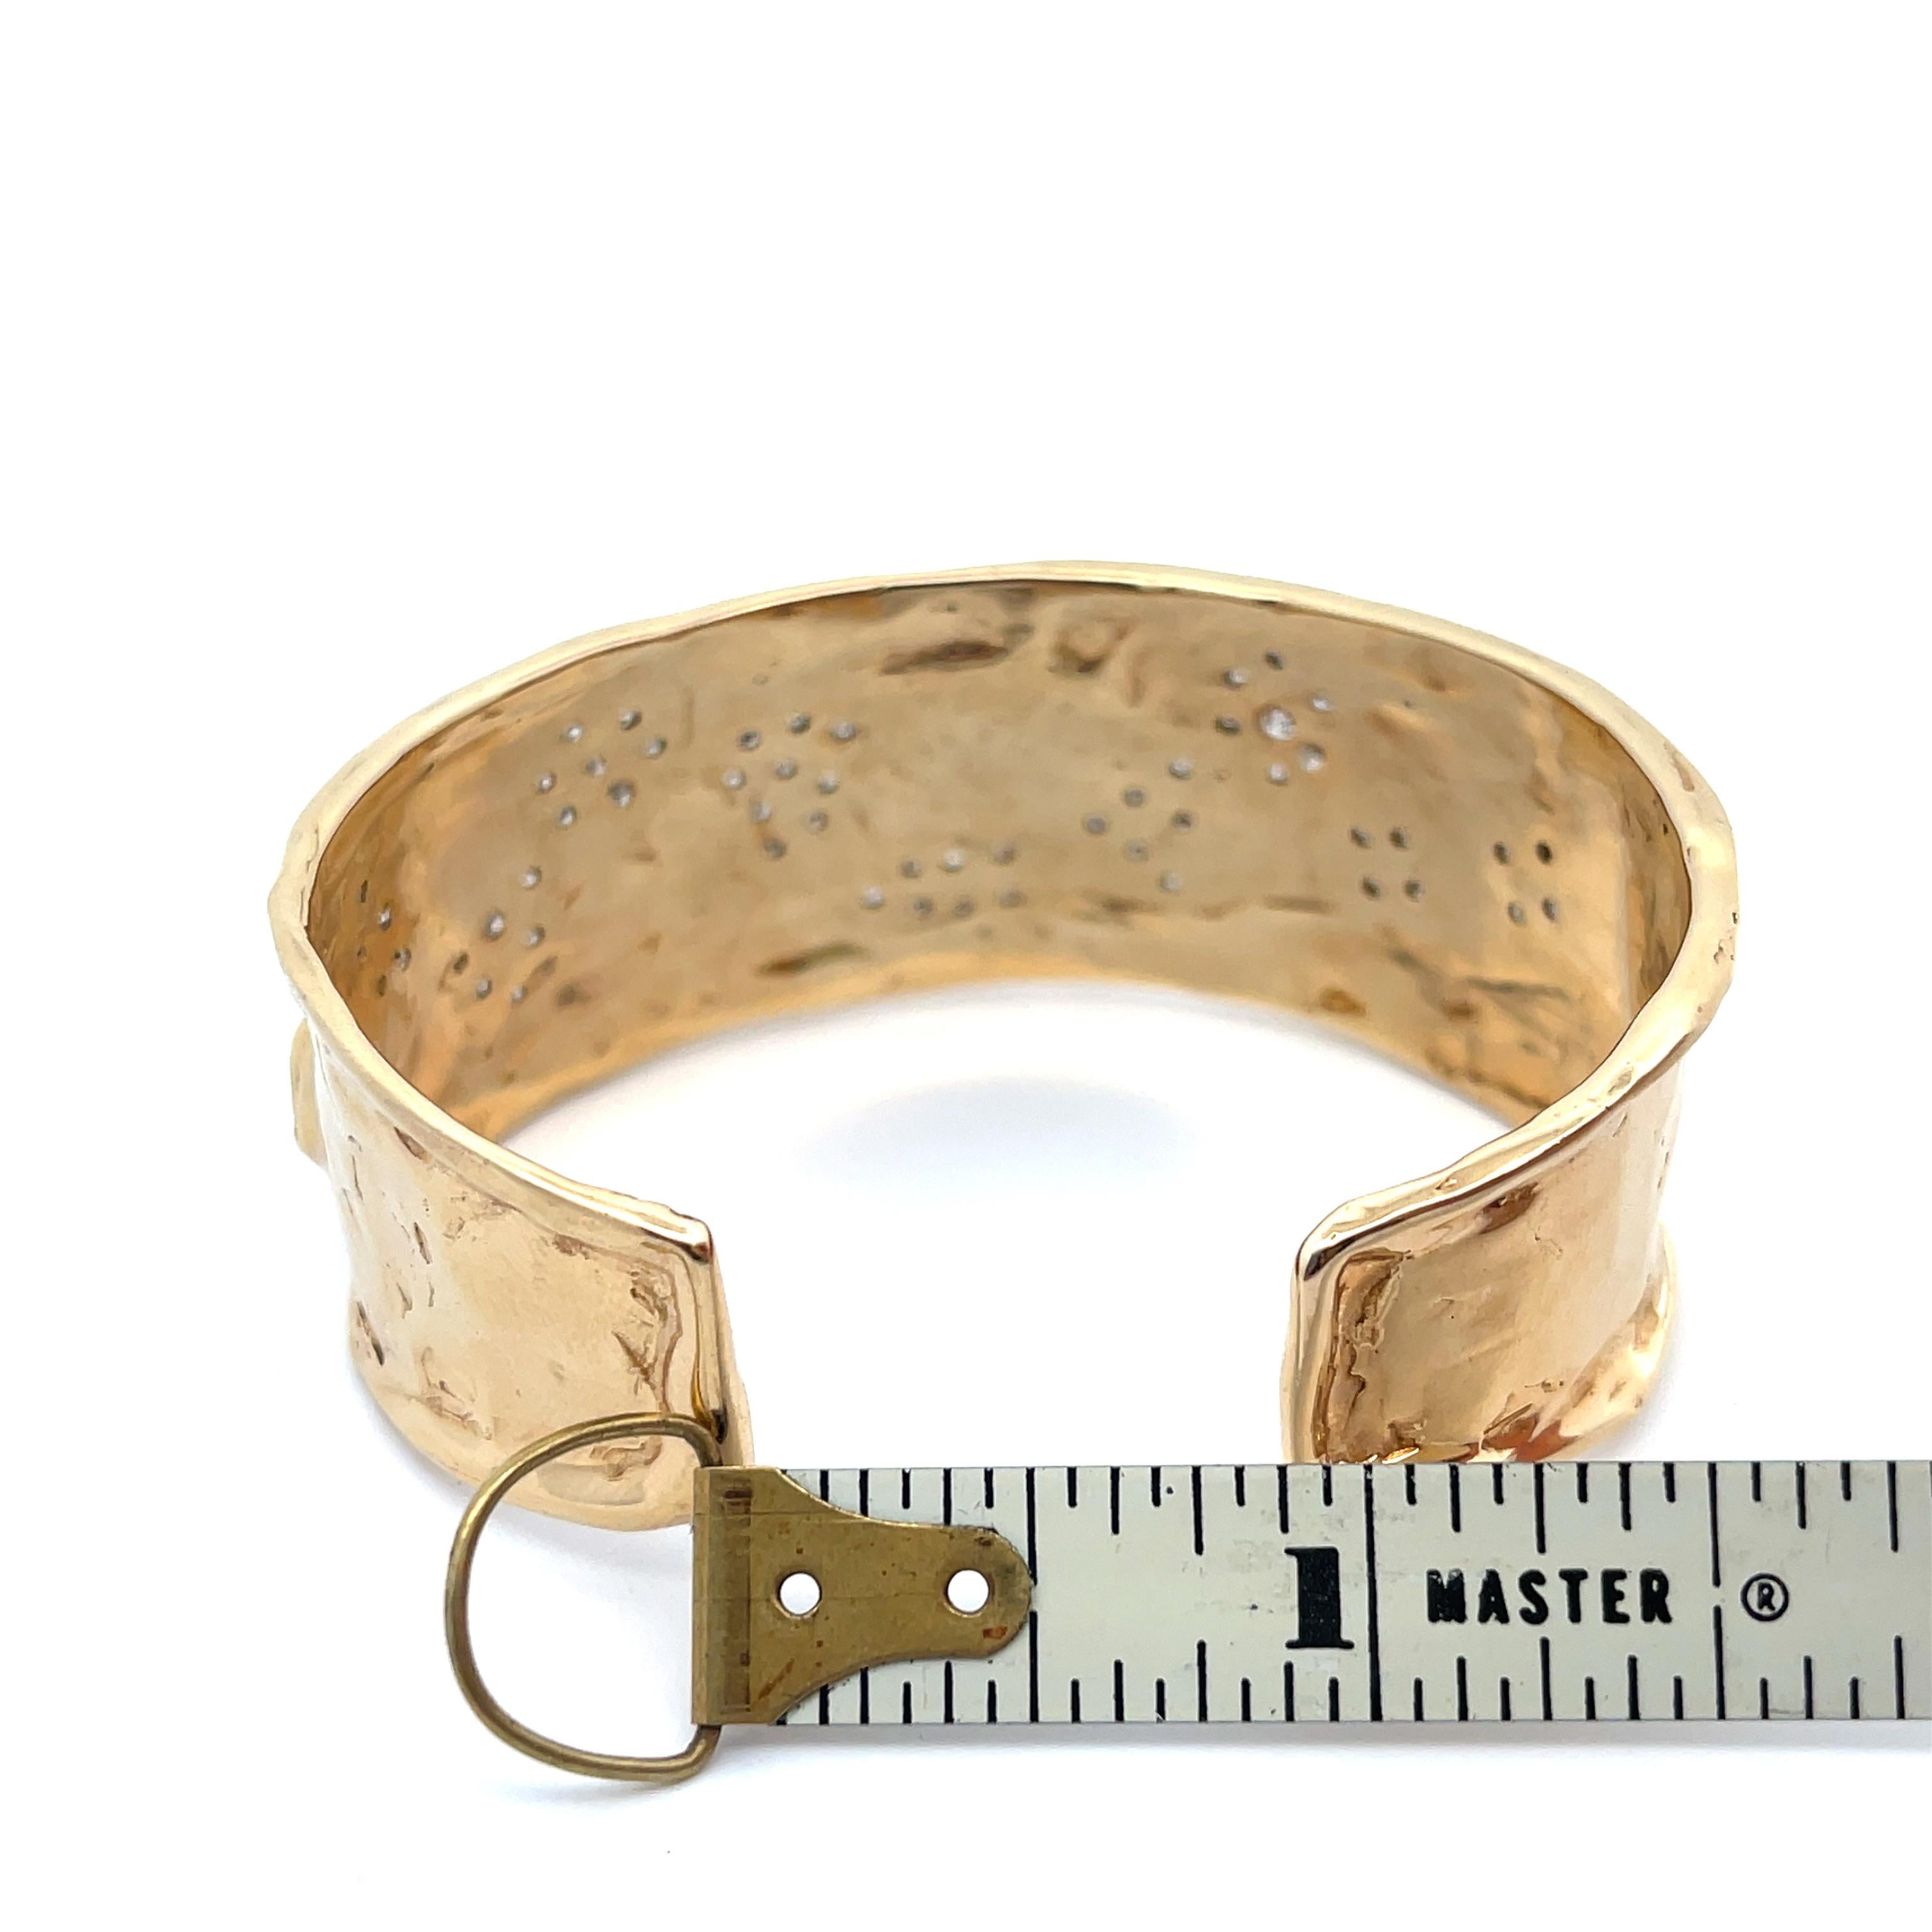 Diamond Pathway Manschettenarmband aus 14K Gelbgold. Das Armband besteht aus ca. 1.50 ct runden Diamanten im Brillantschliff. Perfekt für ein schmales Handgelenk. Die Öffnung der Manschette beträgt etwa 1 Zoll. Der Innenumfang der Manschette beträgt